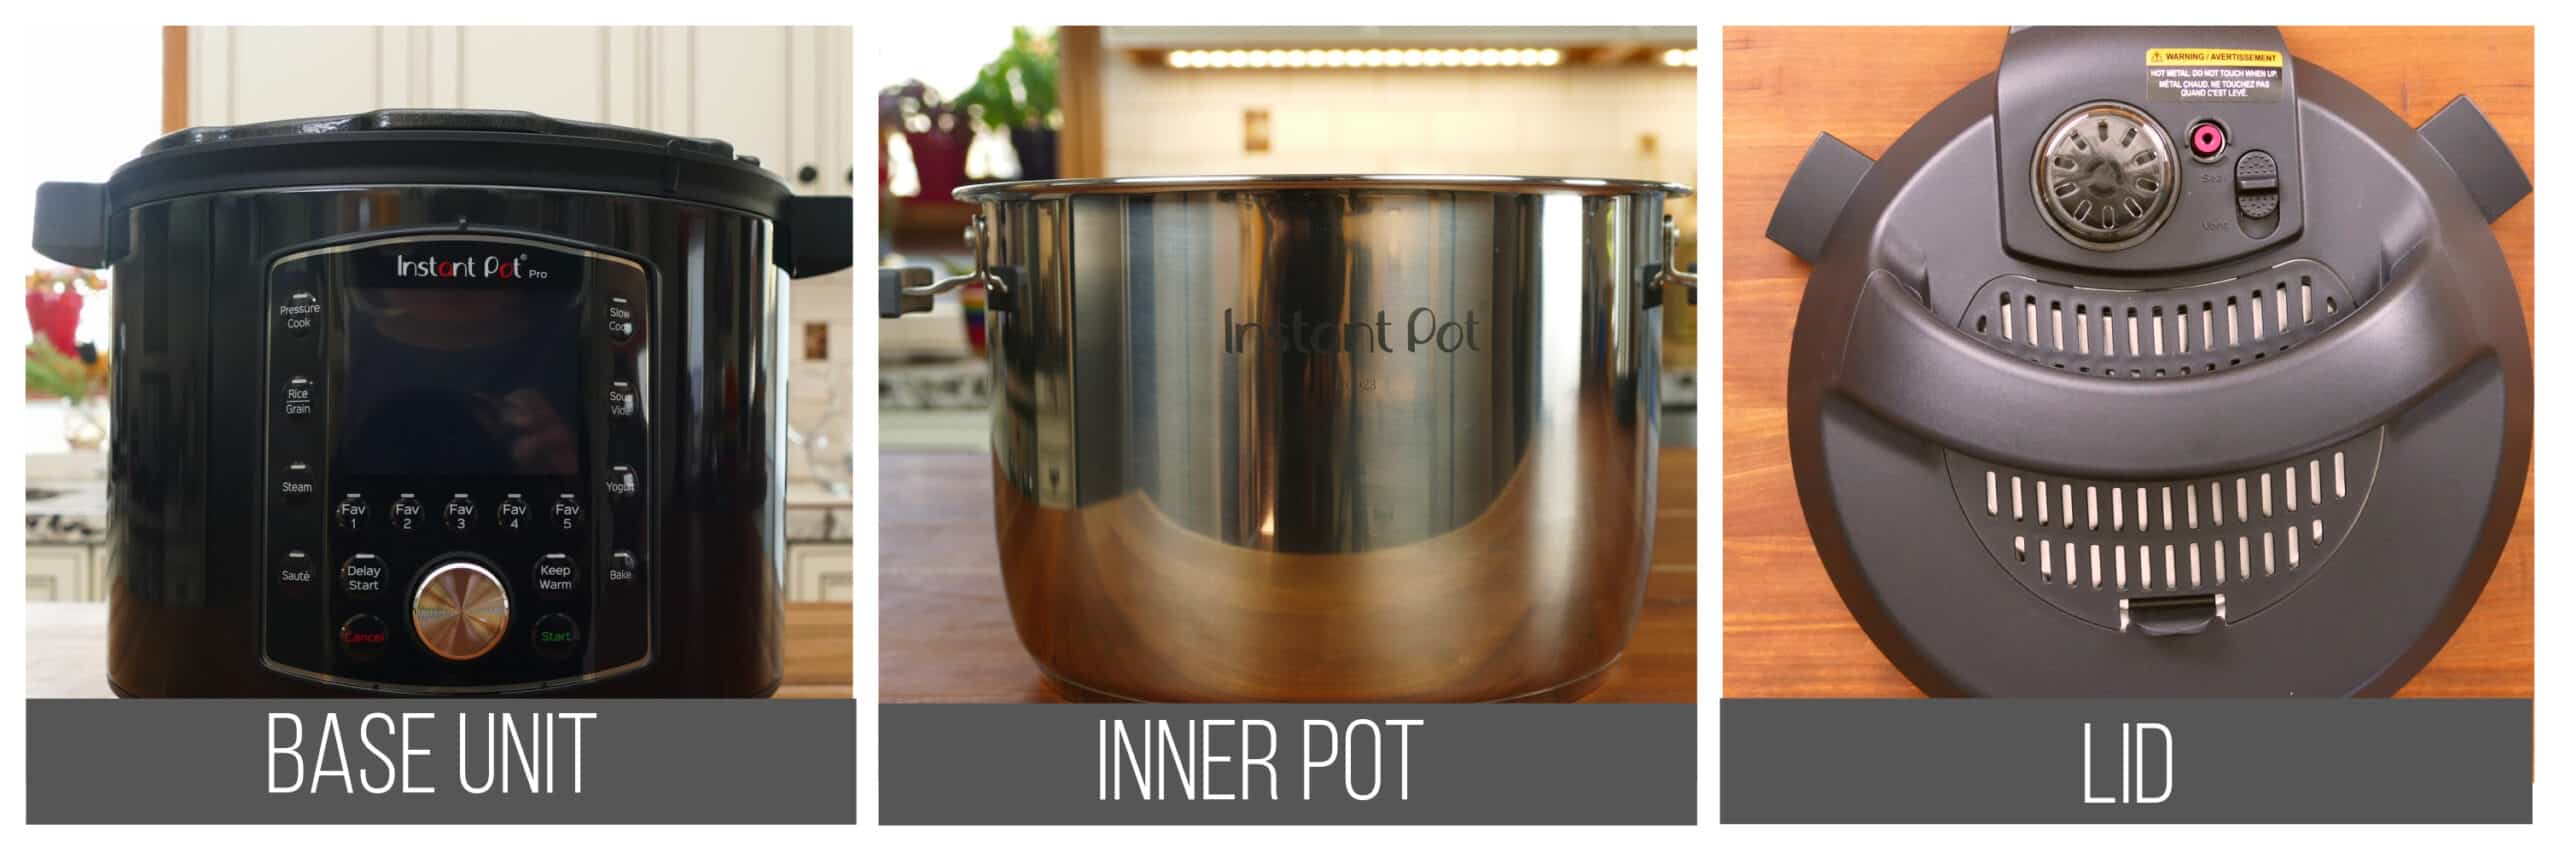 Instant Pot pro parts collage - base unit, inner pot, lid